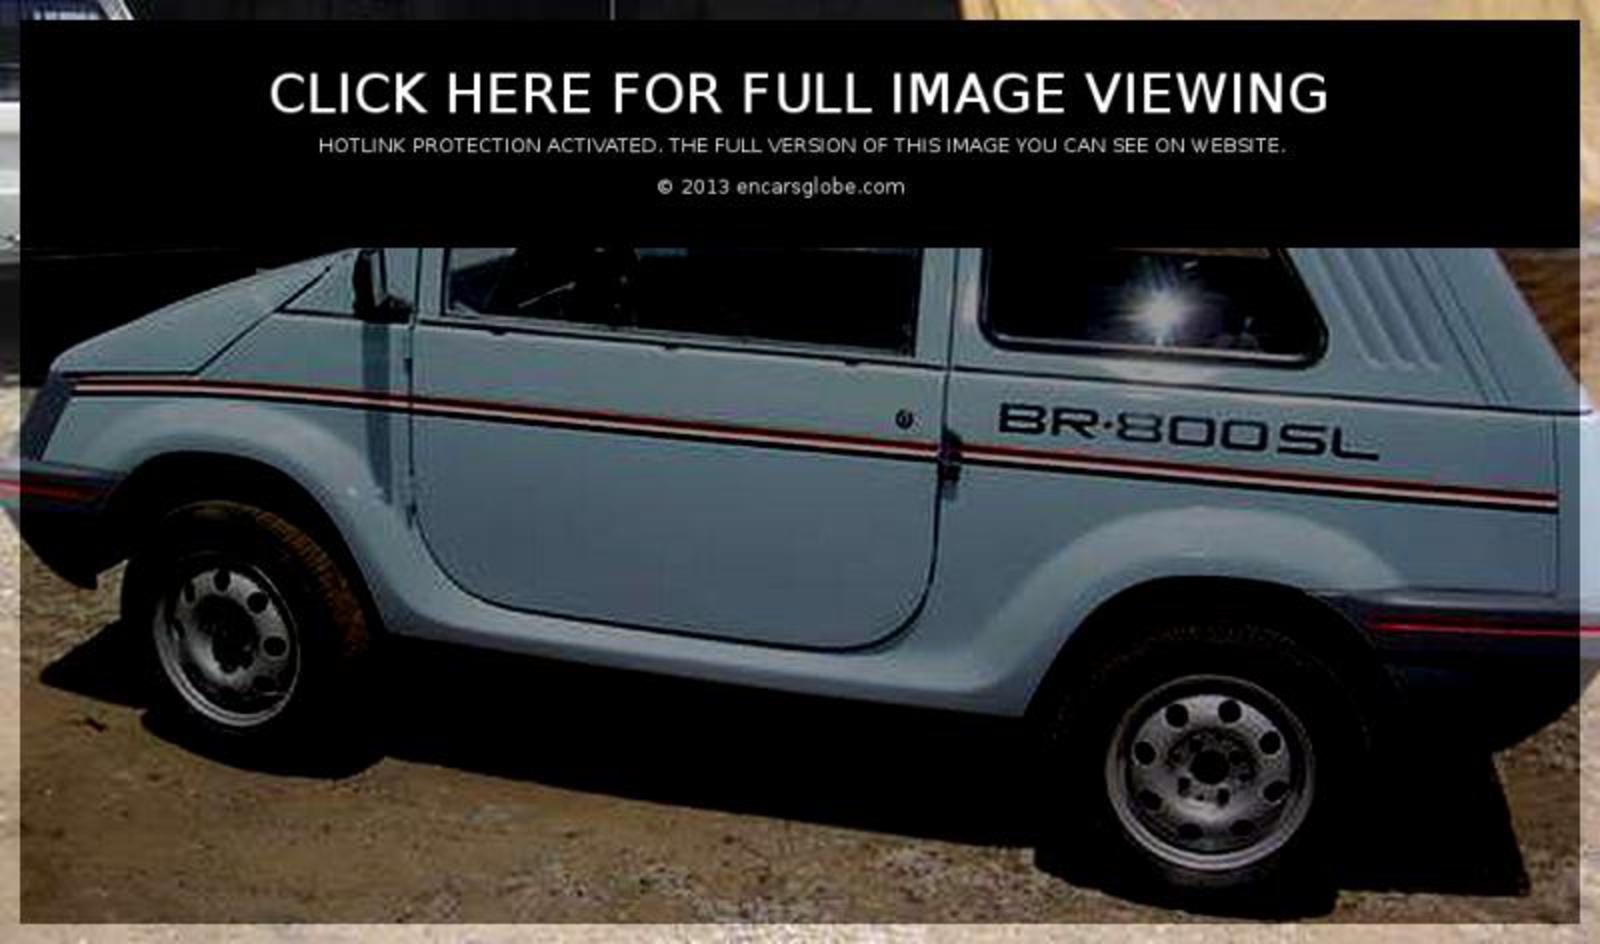 Gurgel BR-800: Galerie de photos, informations complètes sur le modèle...